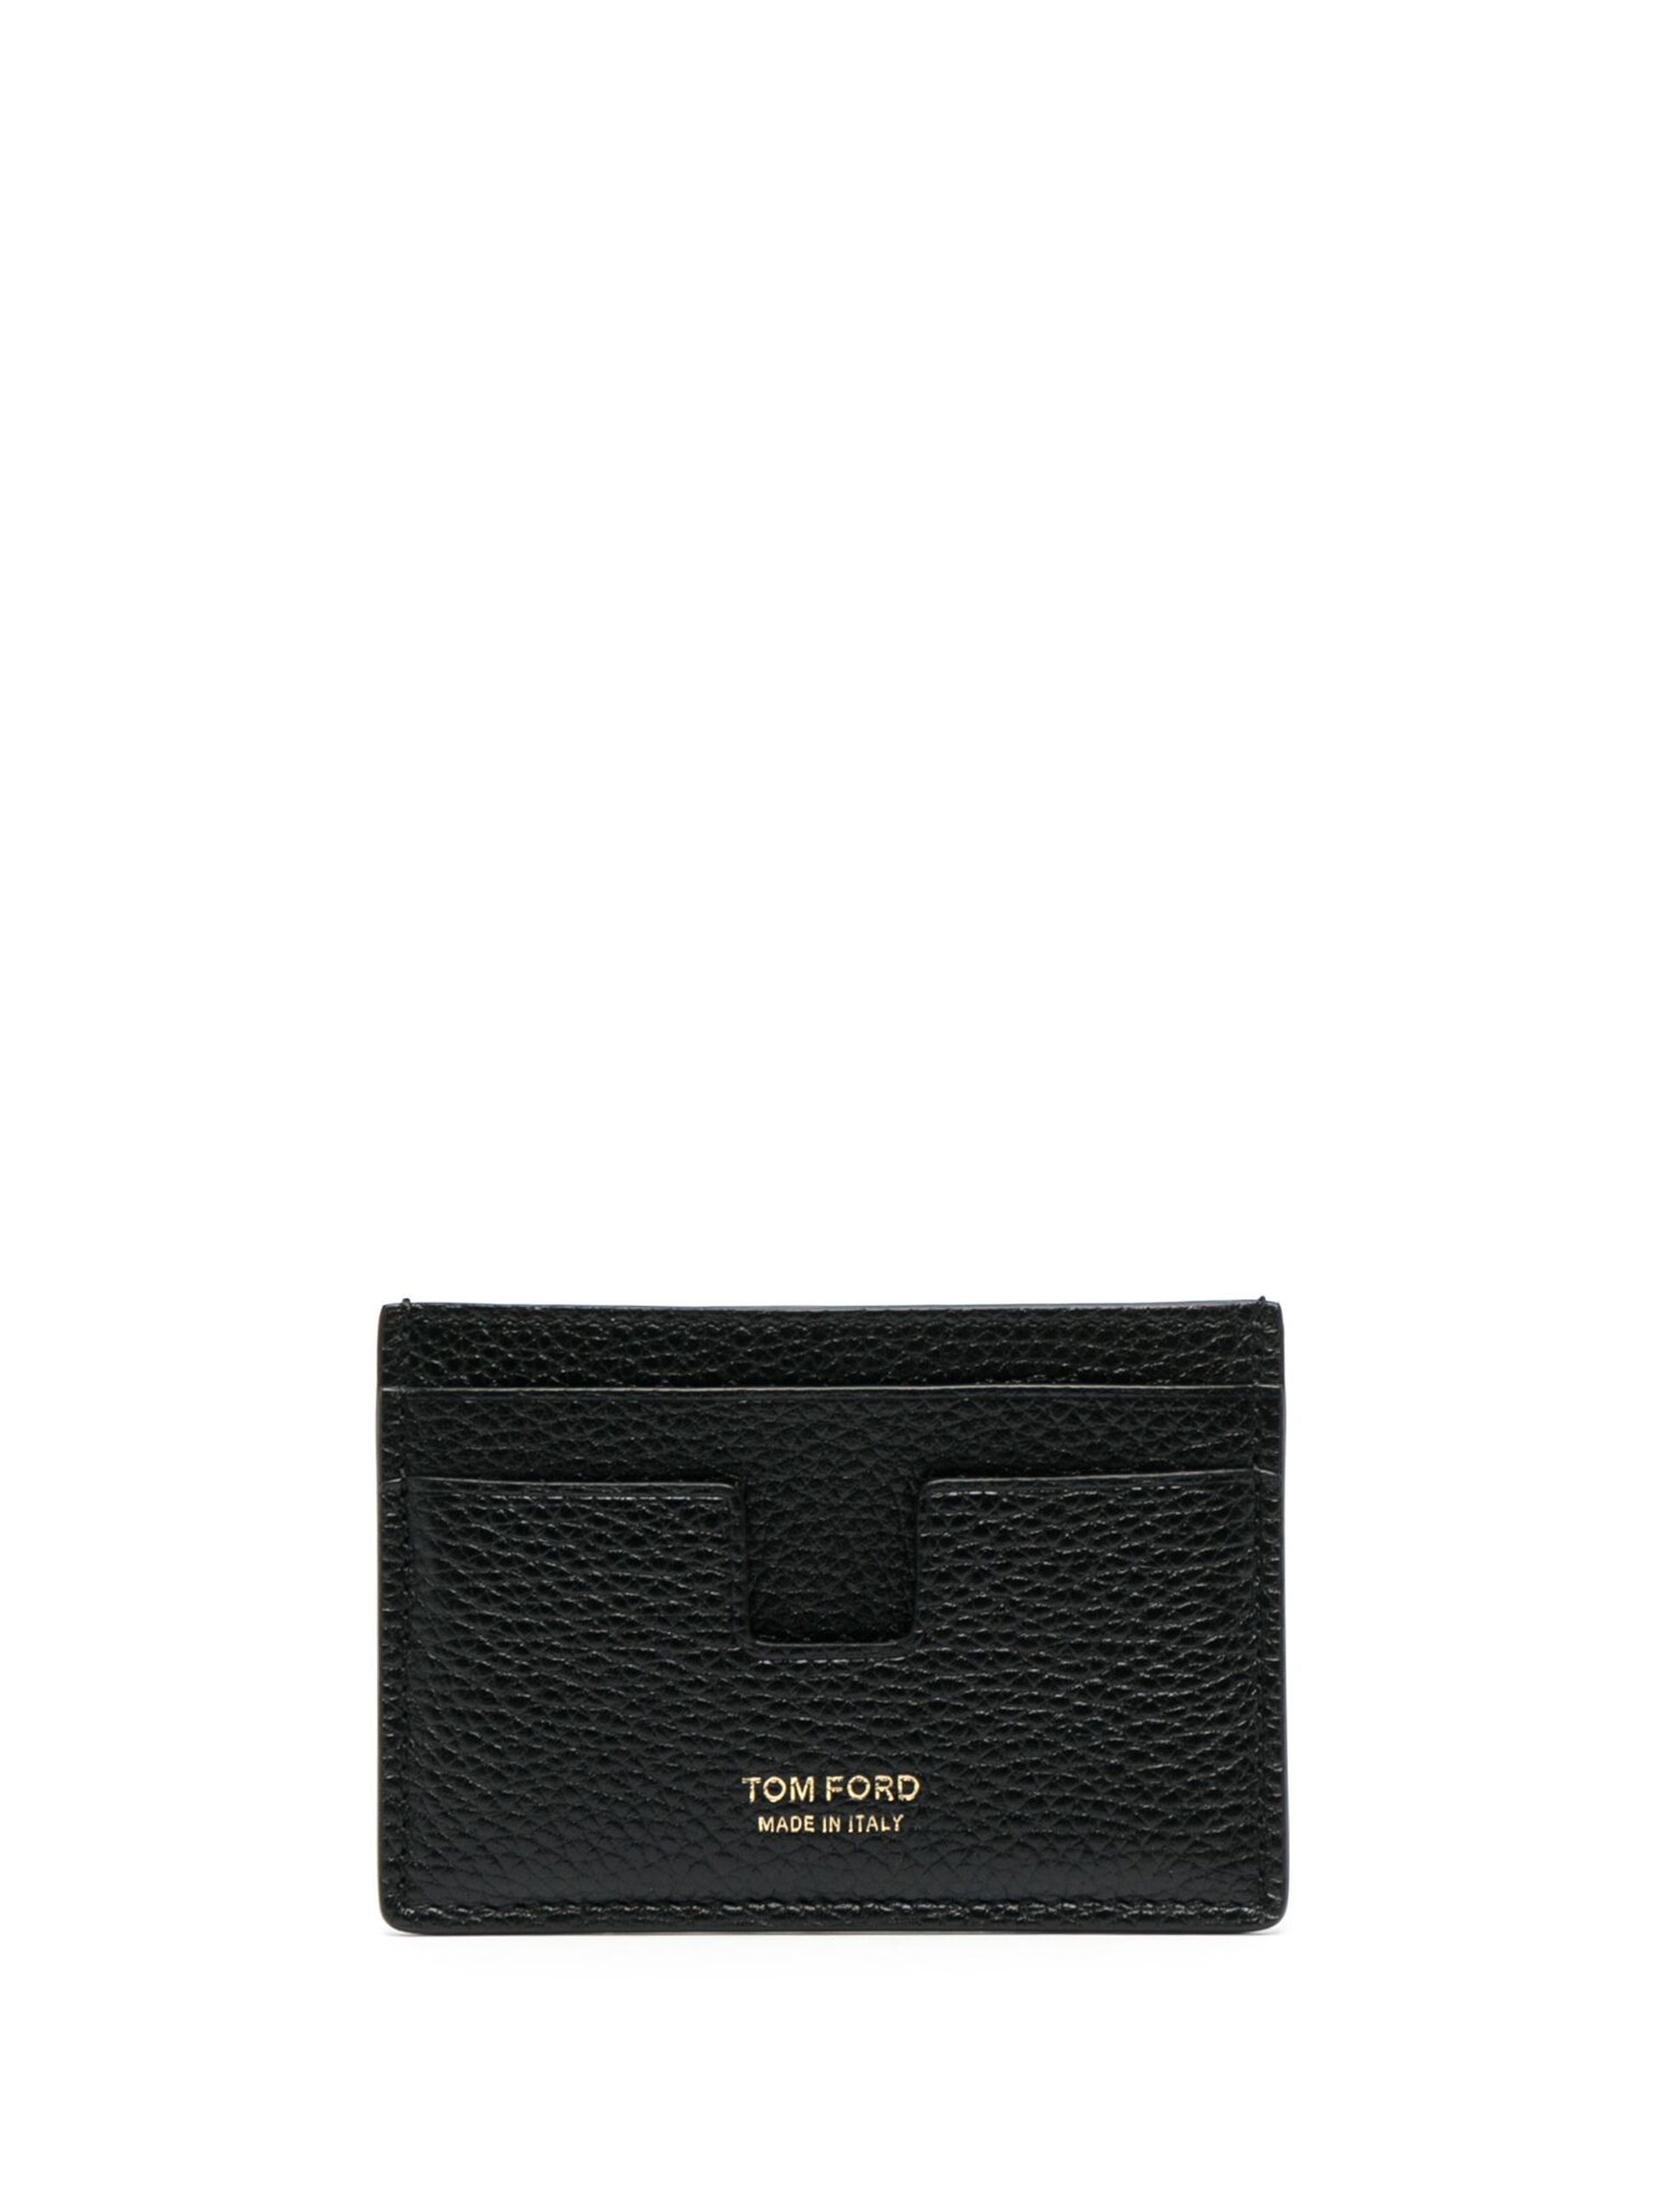 black leather card holder - 1